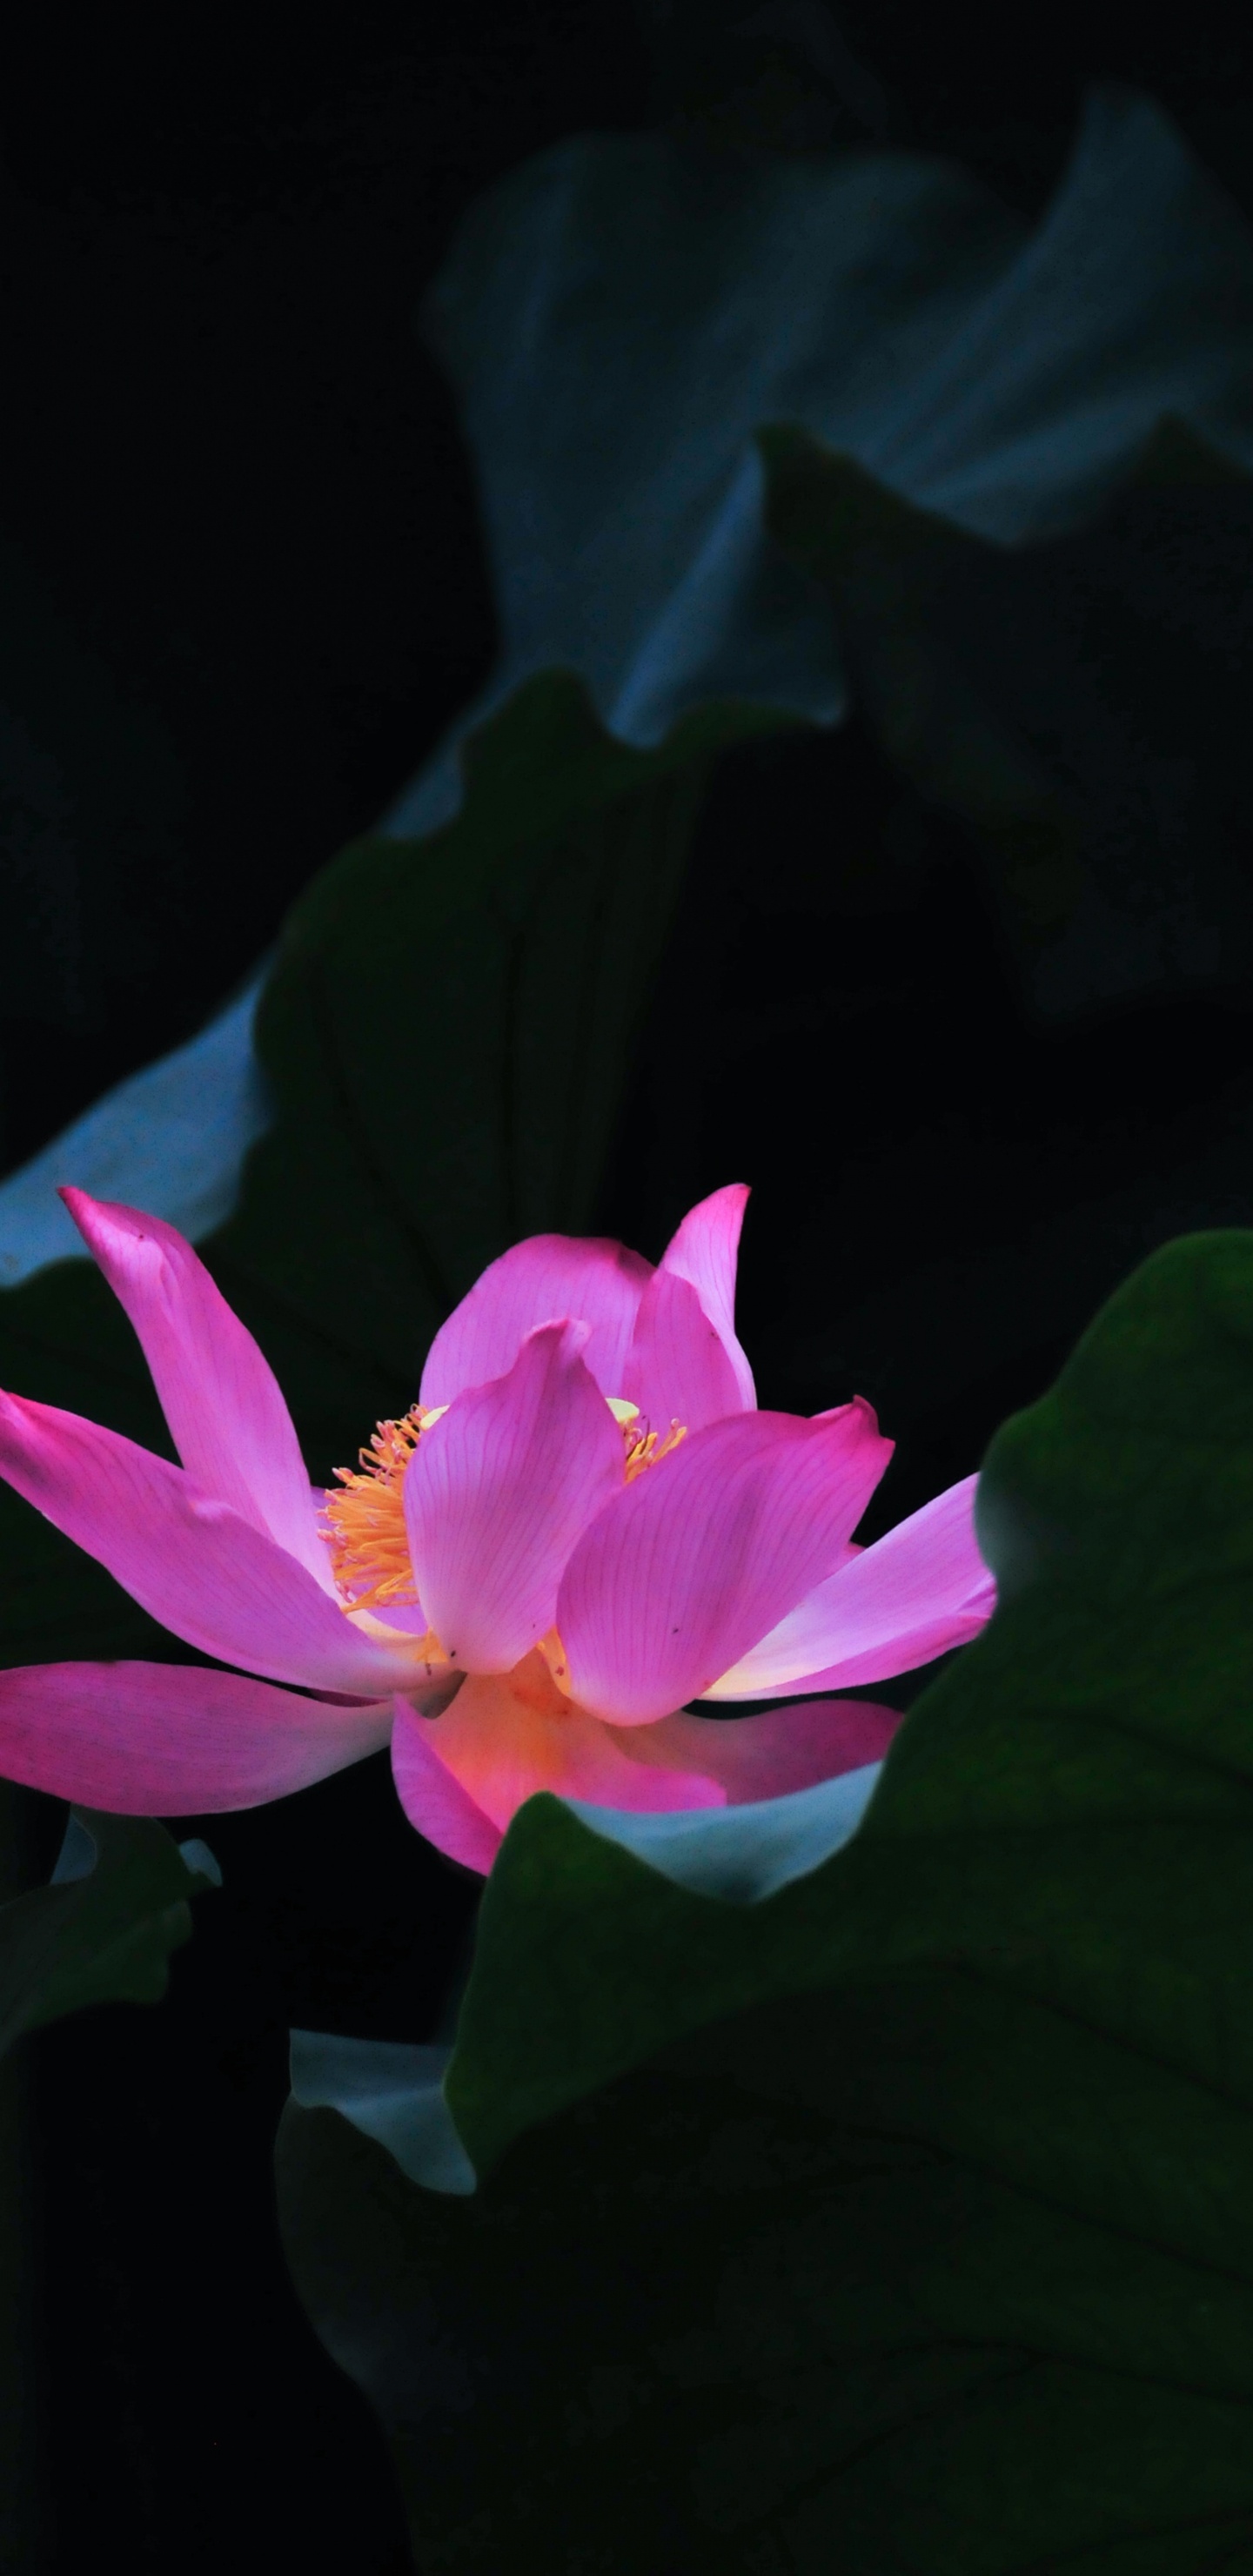 Pink Lotus Flower in Bloom. Wallpaper in 1440x2960 Resolution